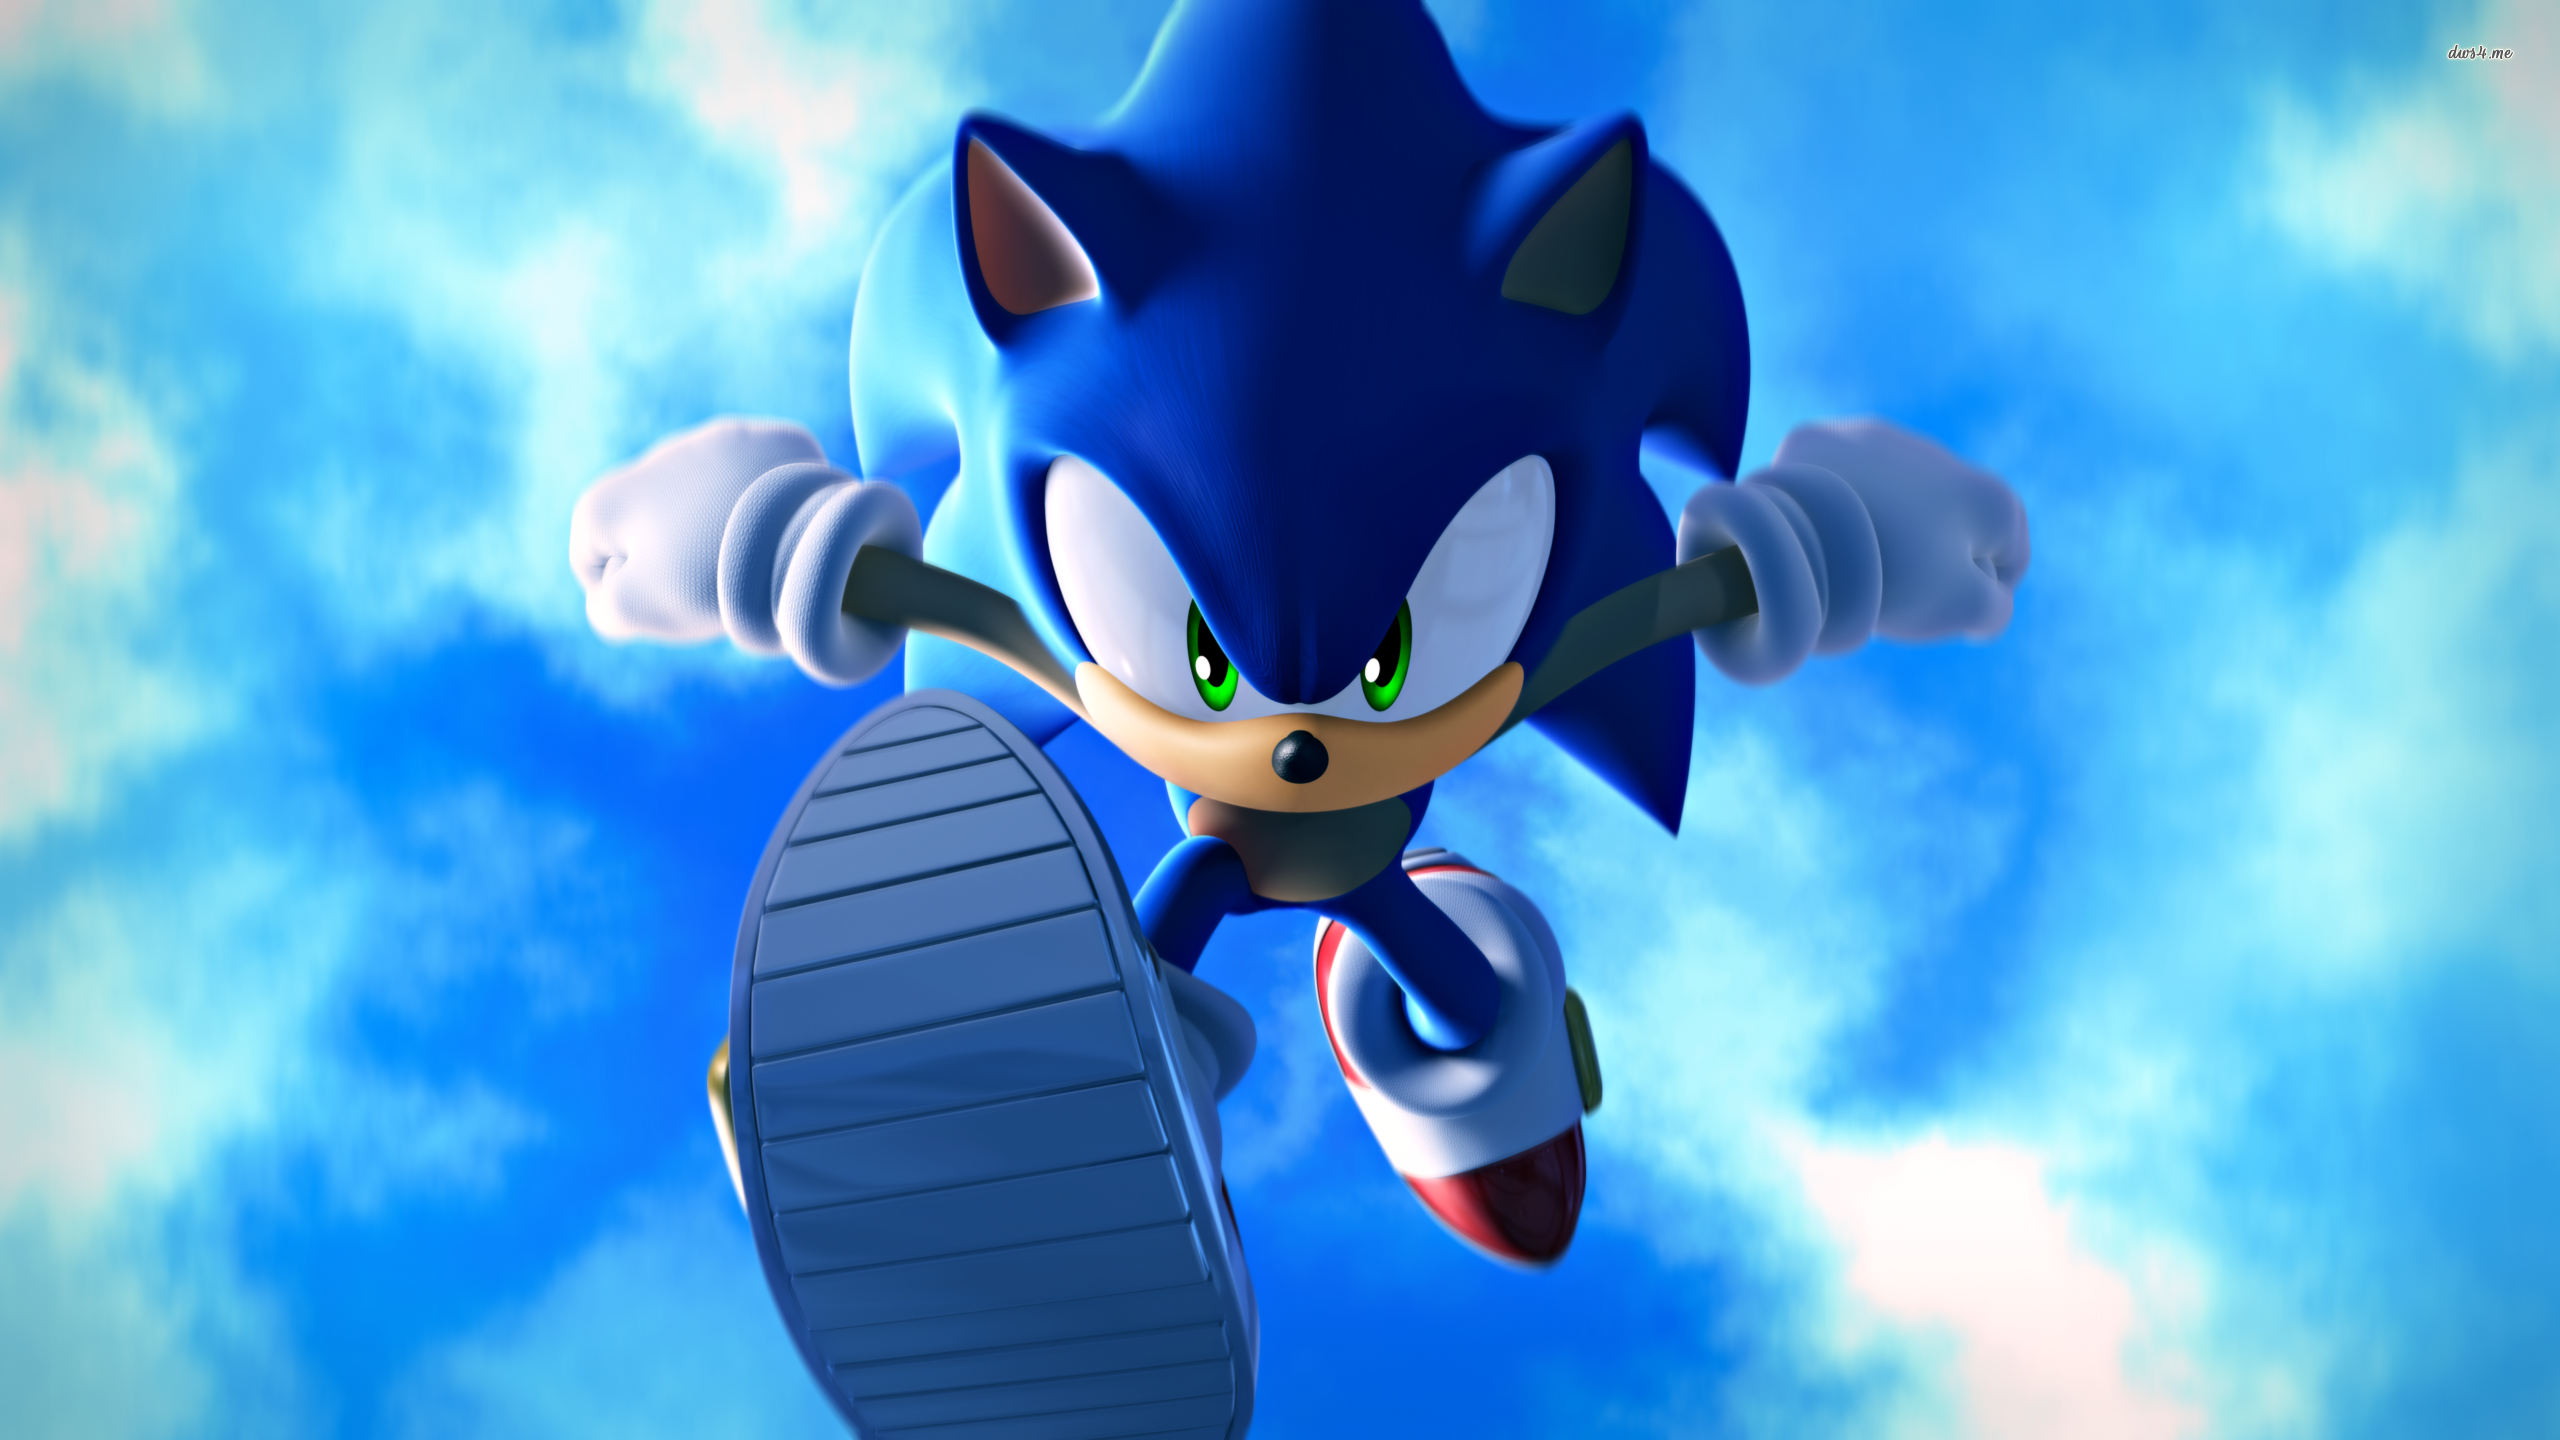 Sonic The Hedgehog Images Download - KibrisPDR